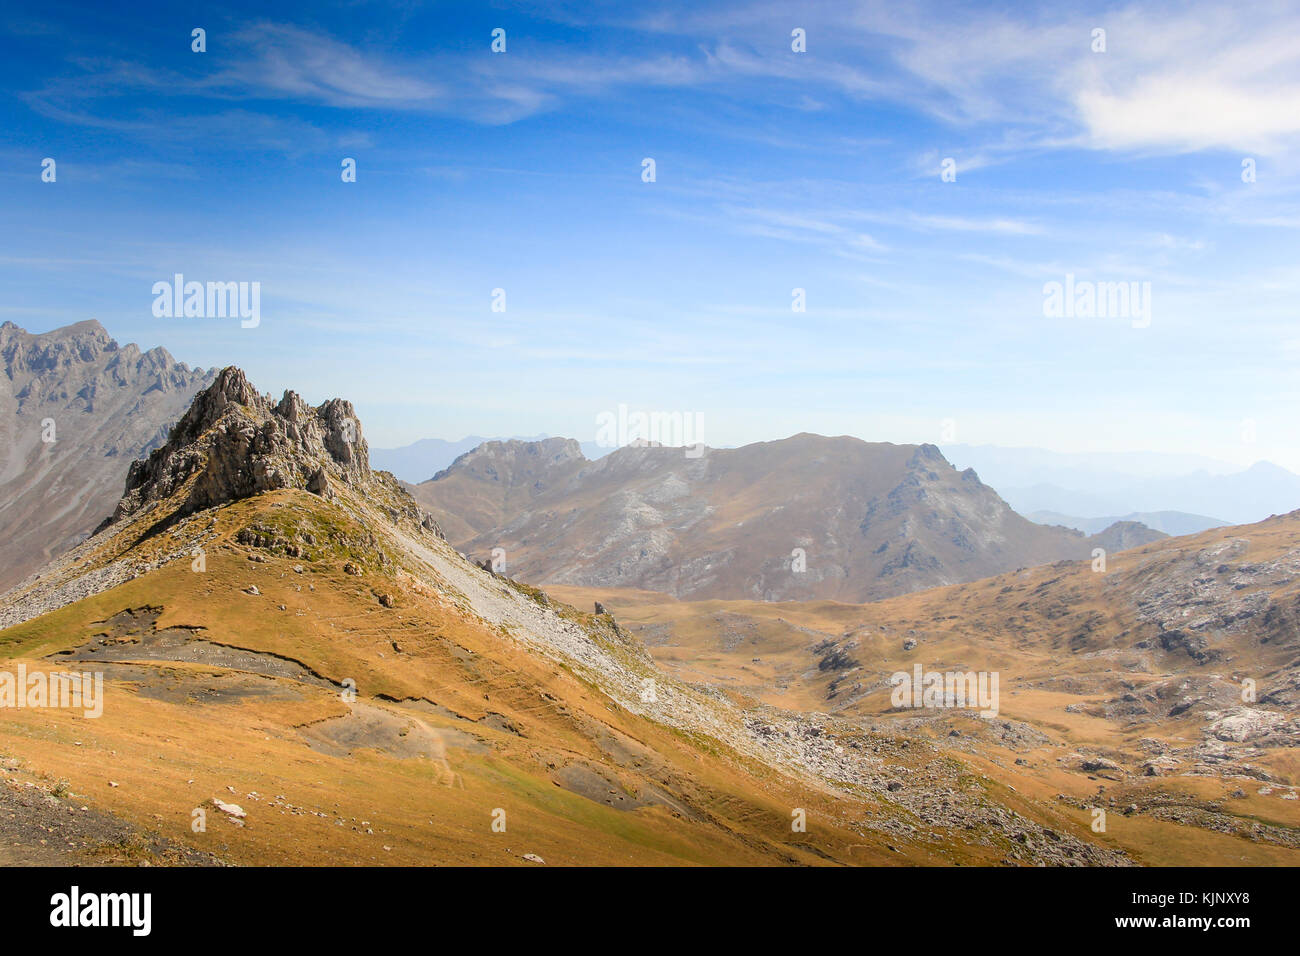 La formation d'affleurements rocheux et de vue à distance dans les Picos de Europa par fuente de l'Espagne avec ciel bleu Banque D'Images